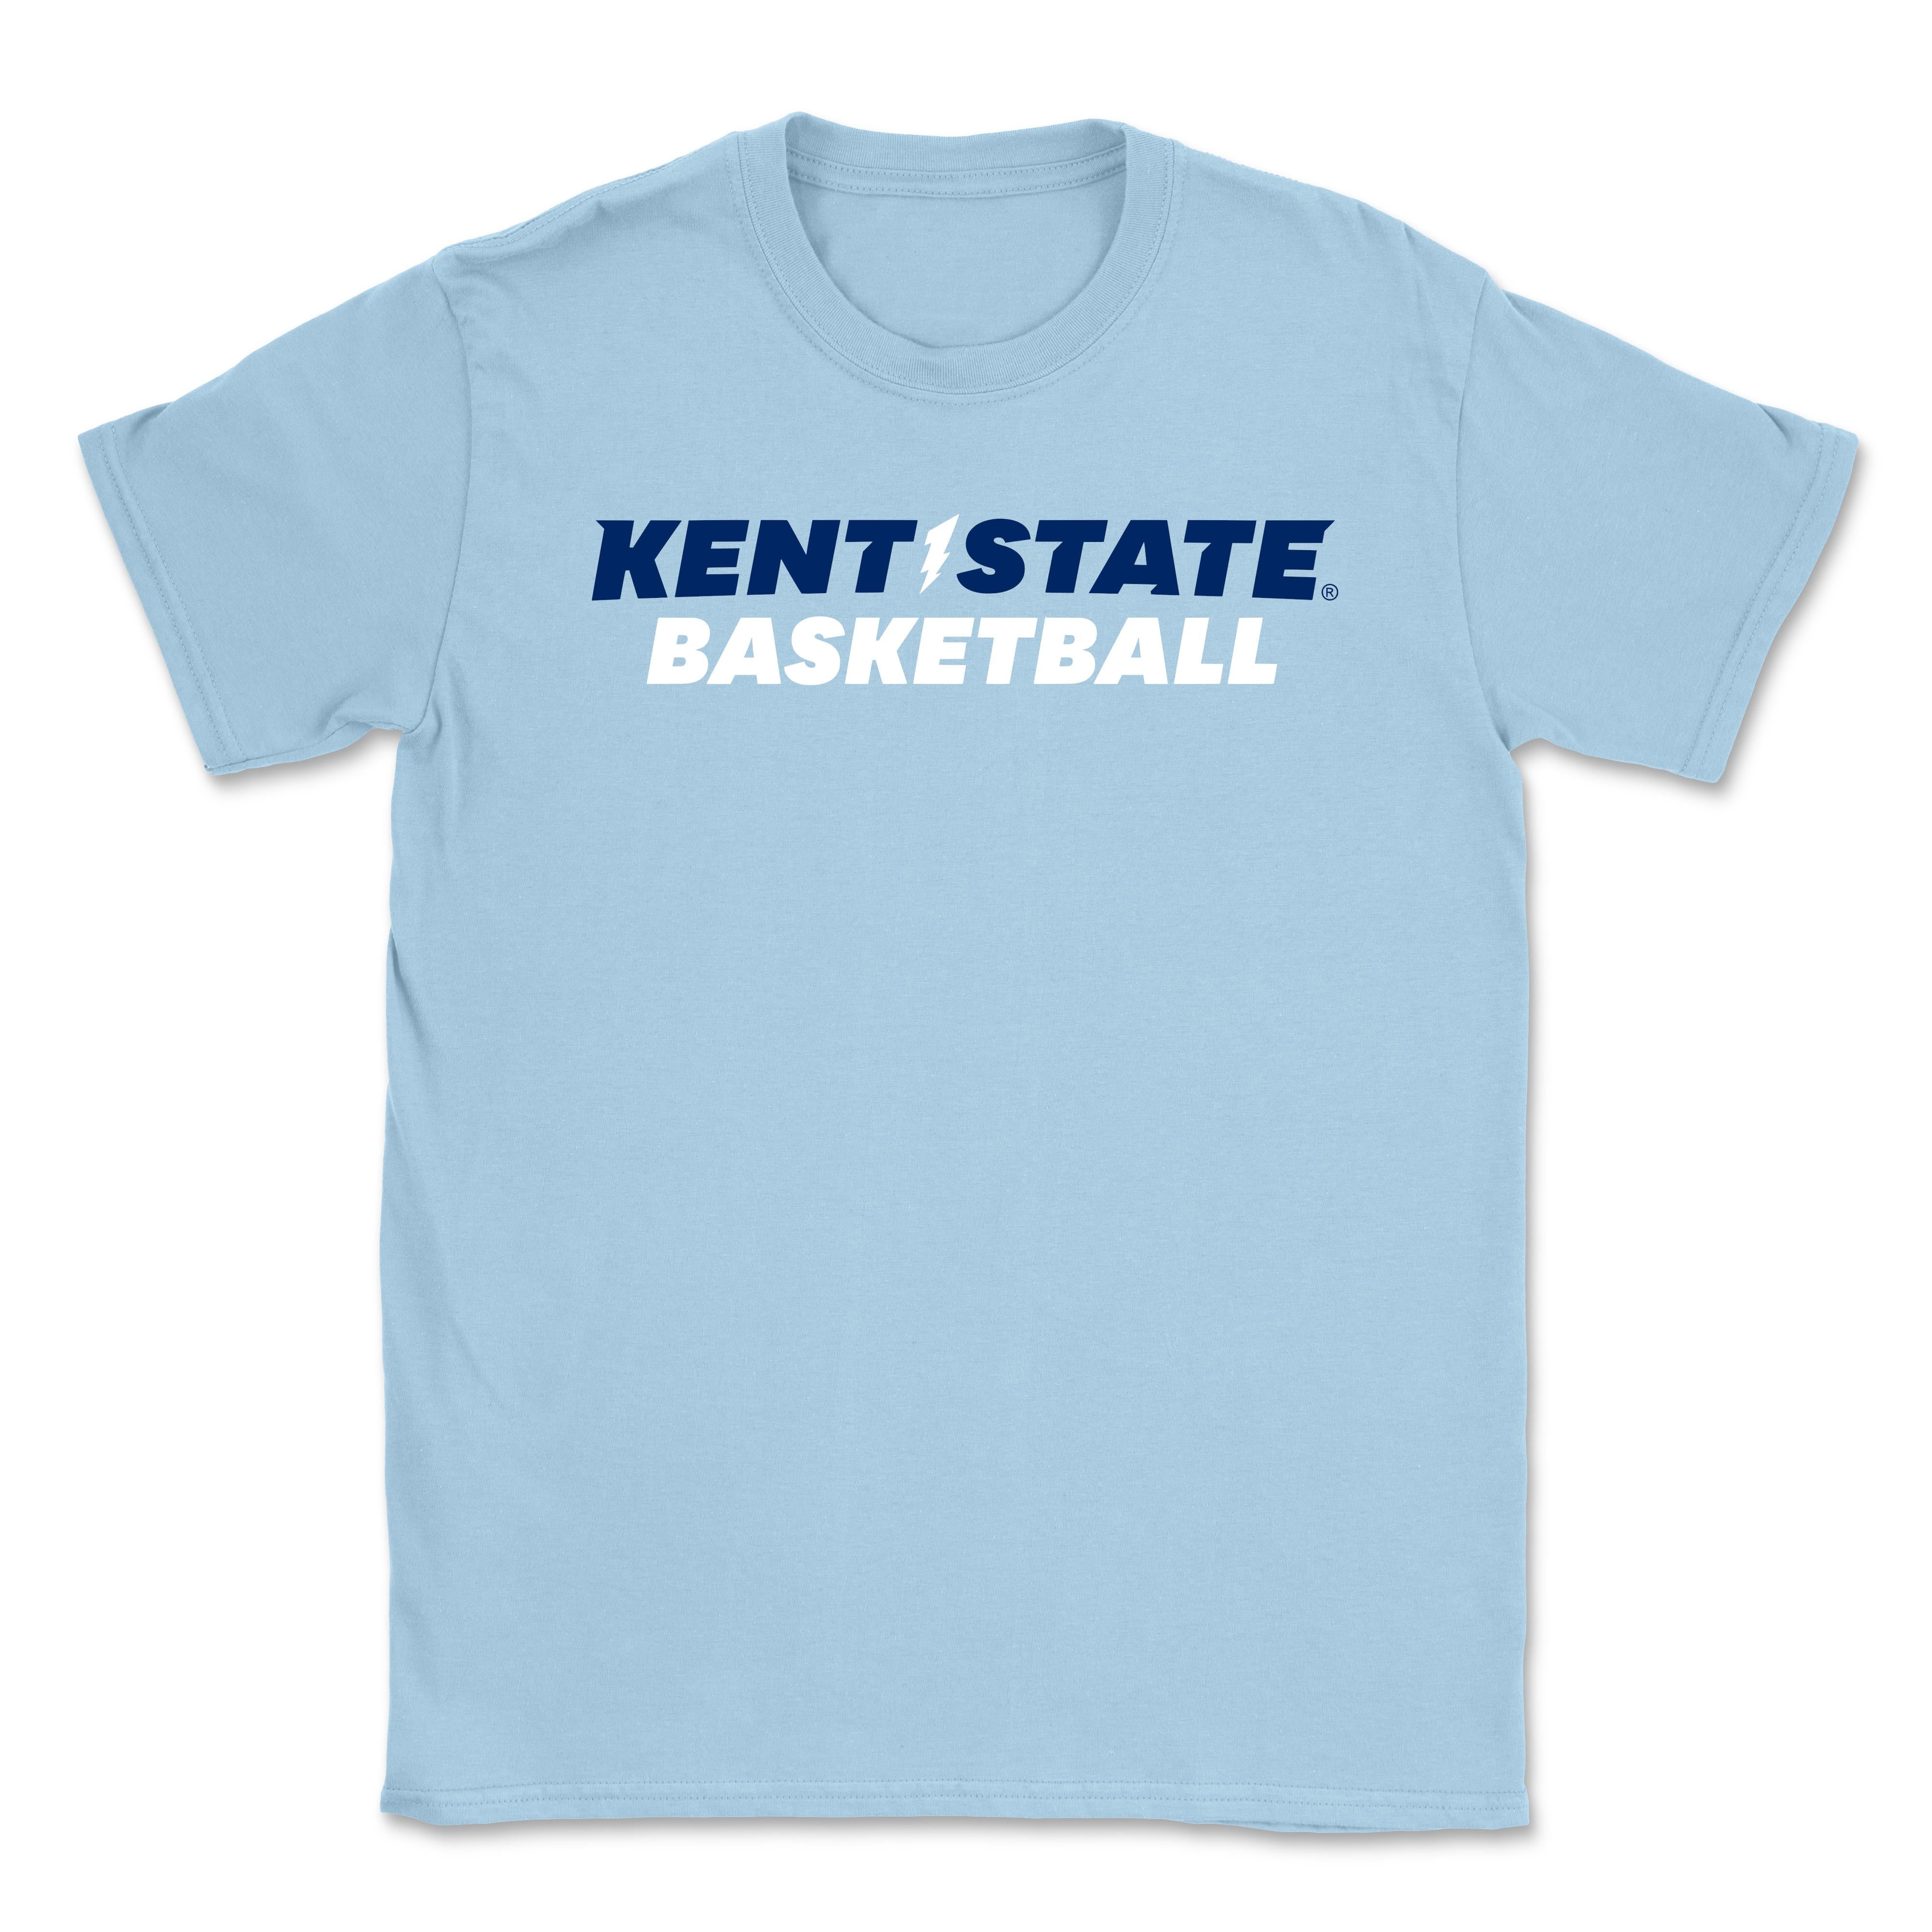 Kent State Light Blue Basketball T-Shirt